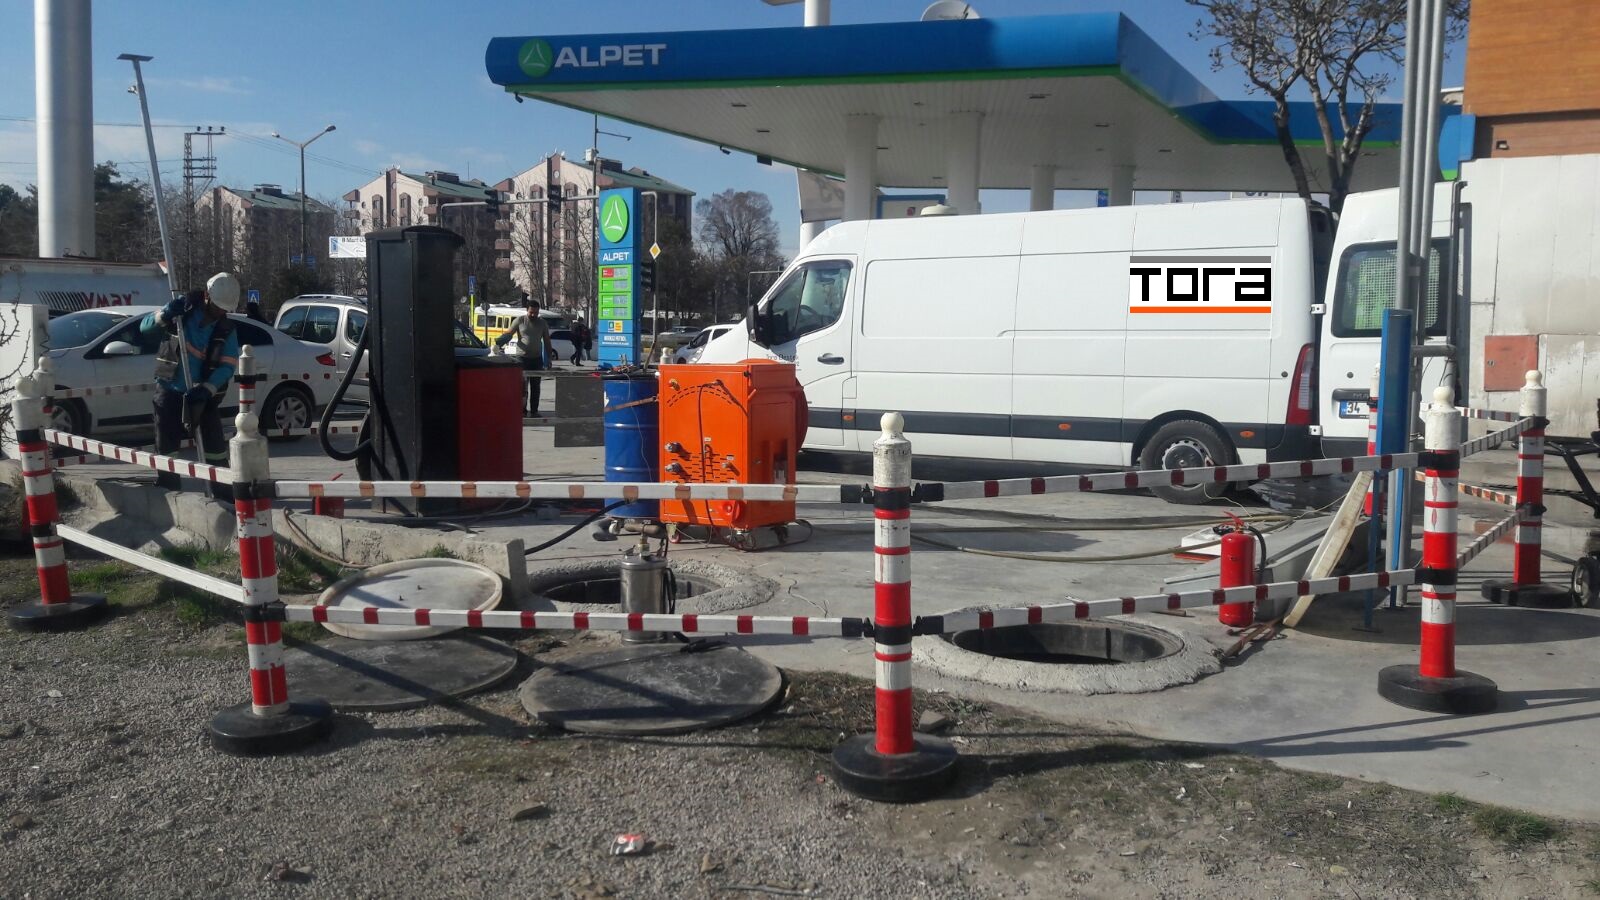 Tora Petrol ALPET akaryakıt istasyonlarında 400 tank temizliği yaptı